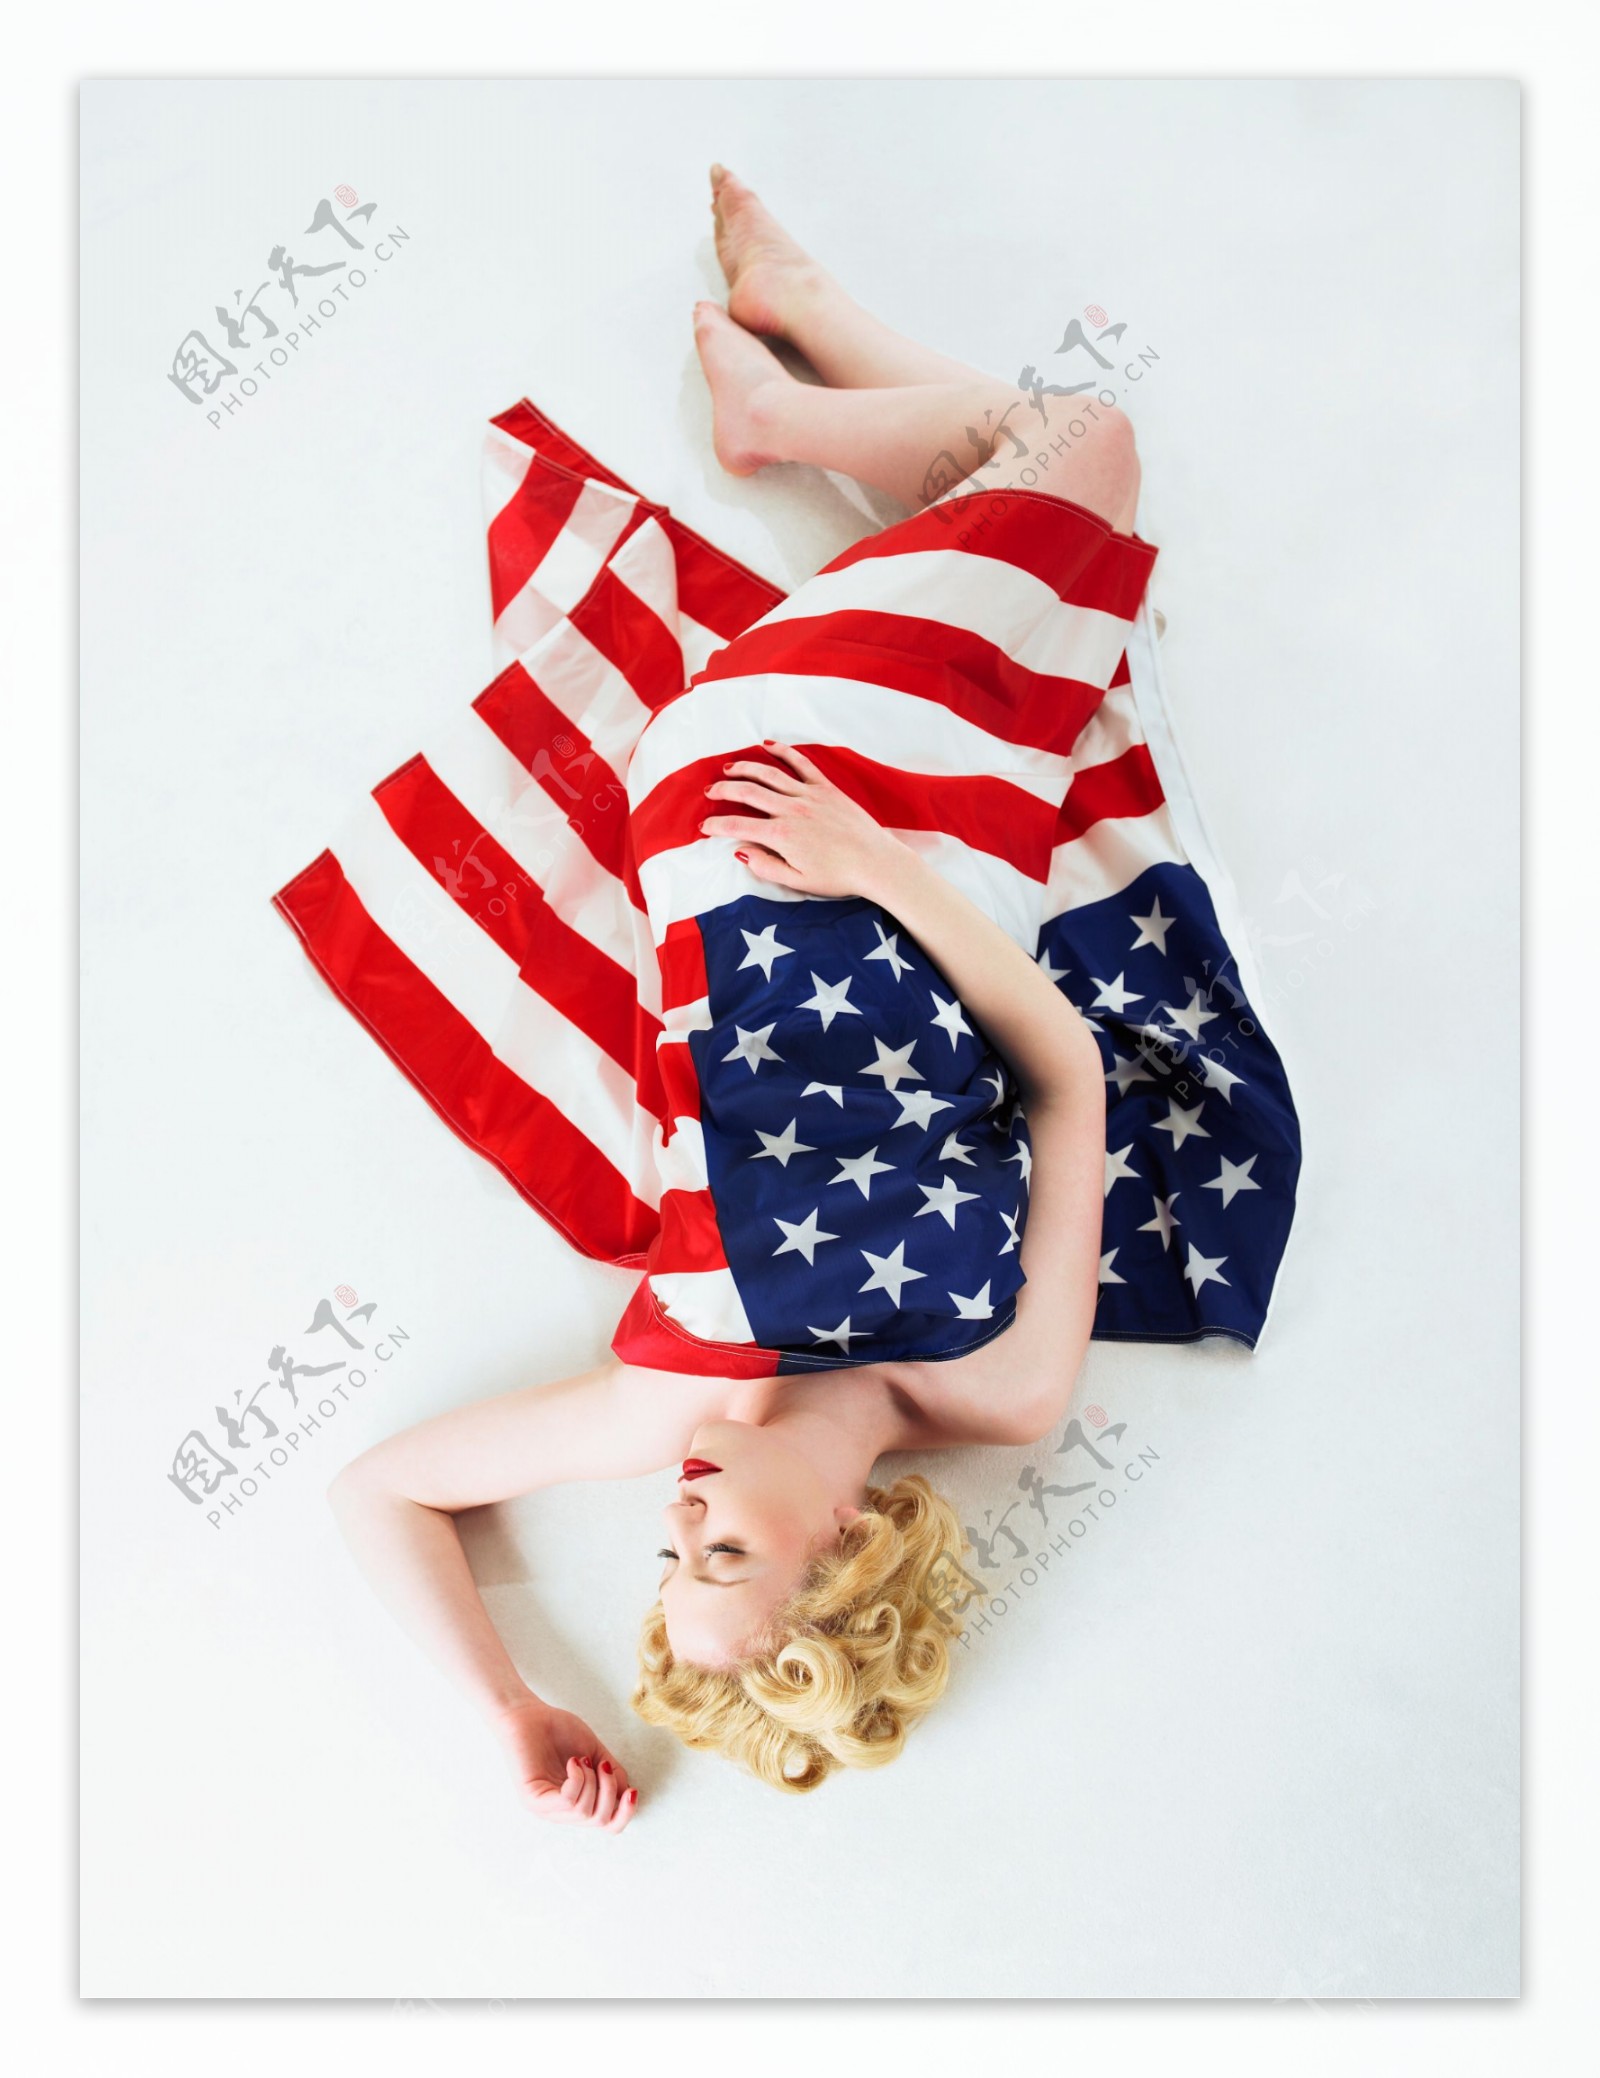 盖着美国国旗睡觉的漂亮性感美女图片